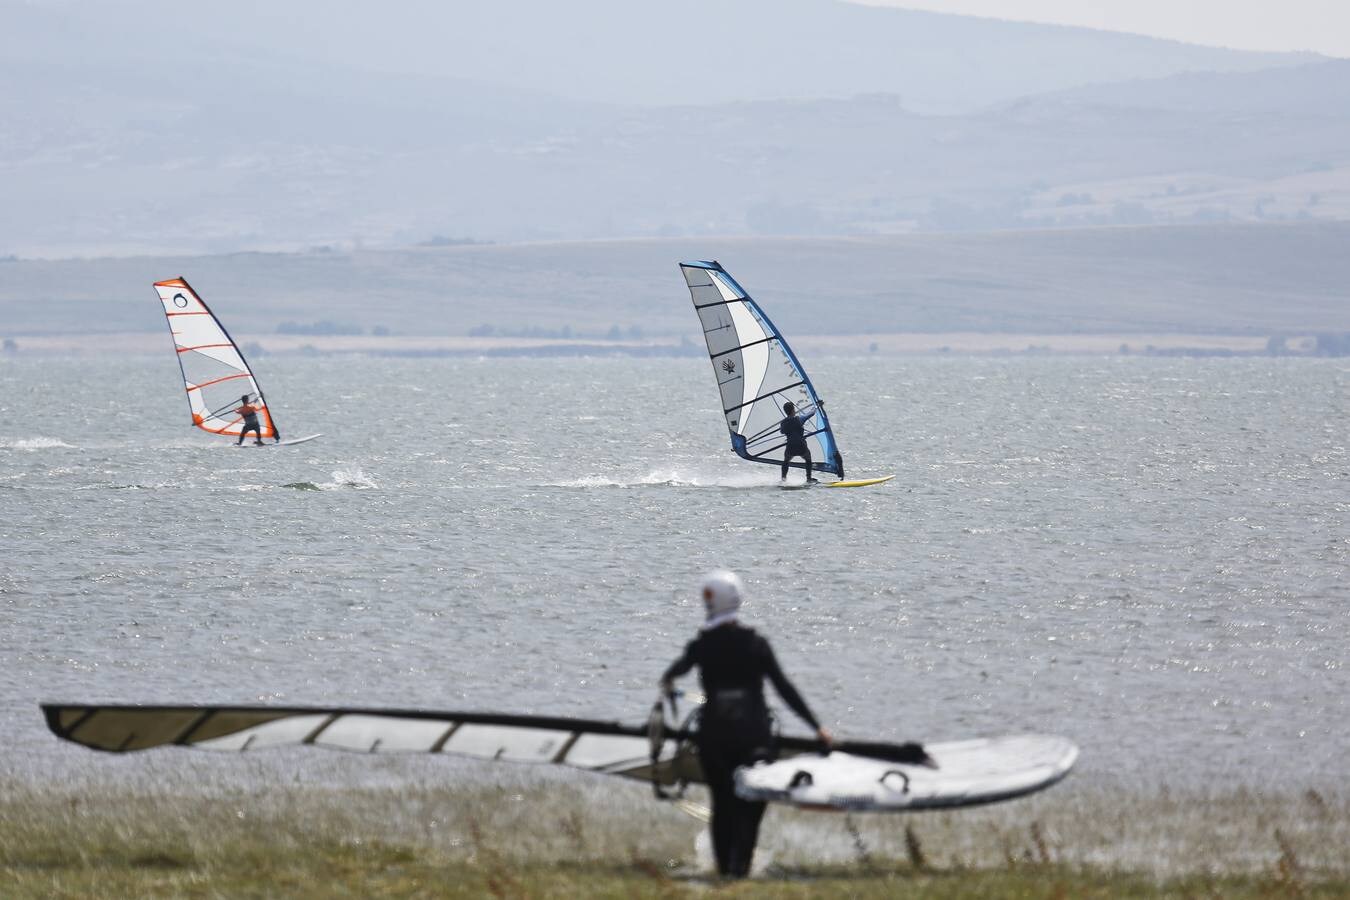 El viento permite a los windsurfistas deslizarse a toda velocidad por el agua.